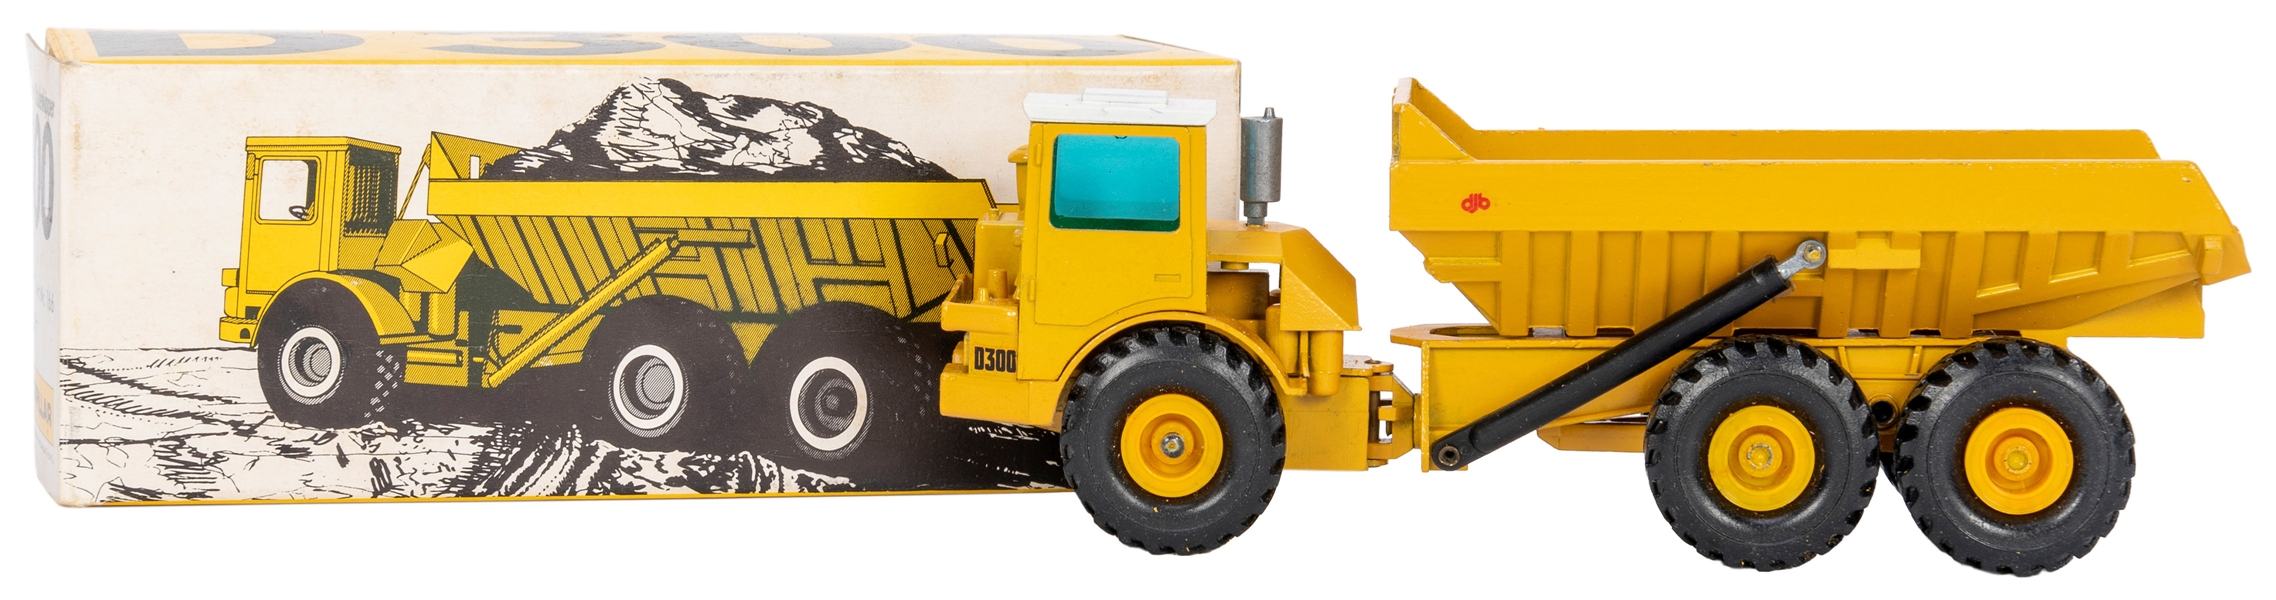  NZG Caterpillar Cat D300 Dump Truck No. 166. Made in W. Ger...